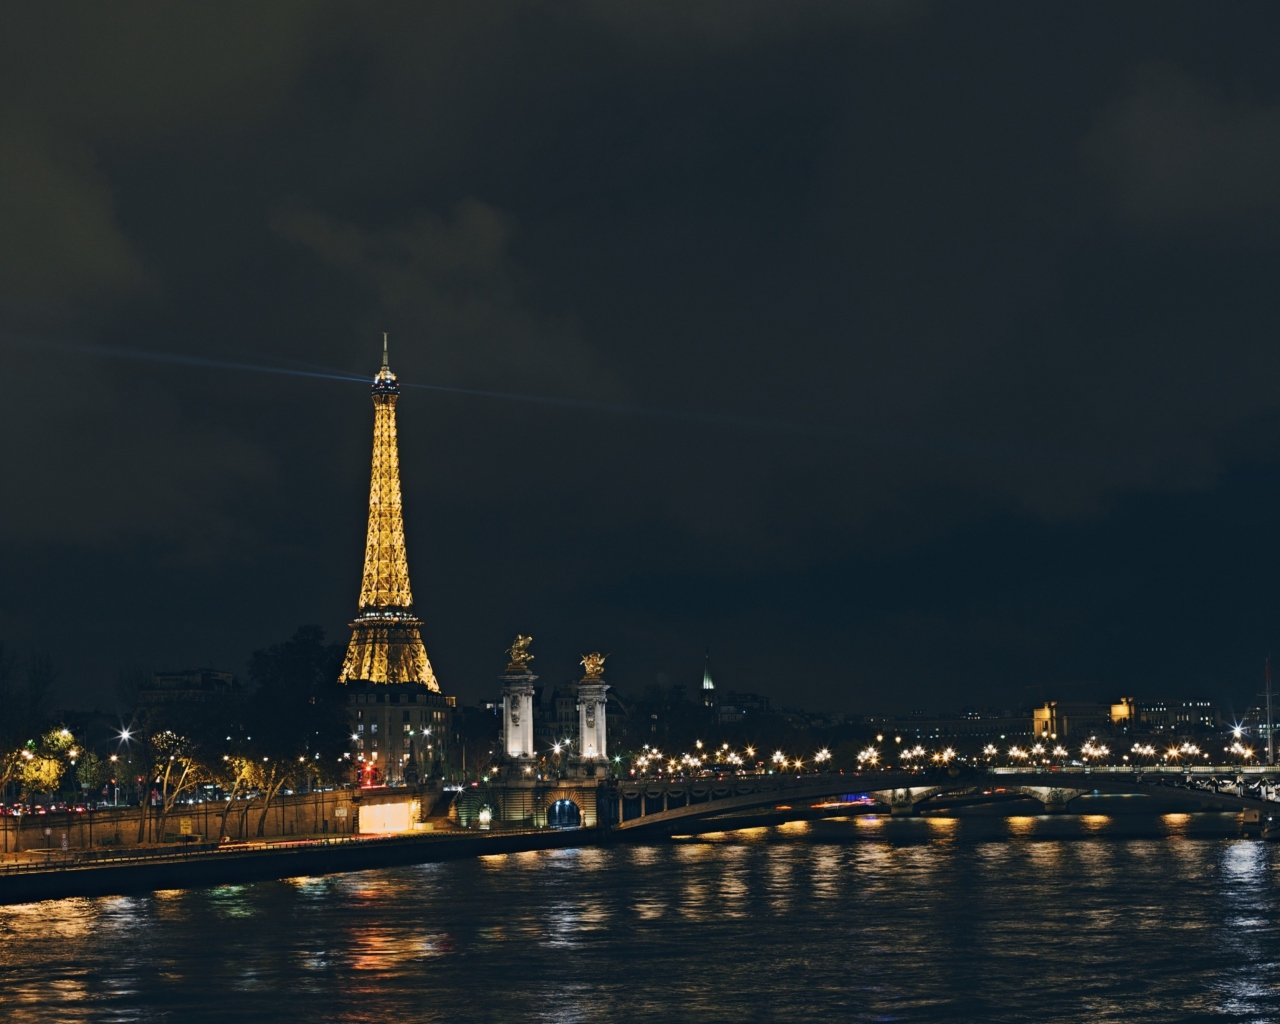 Das Eiffel Tower In Paris France Wallpaper 1280x1024